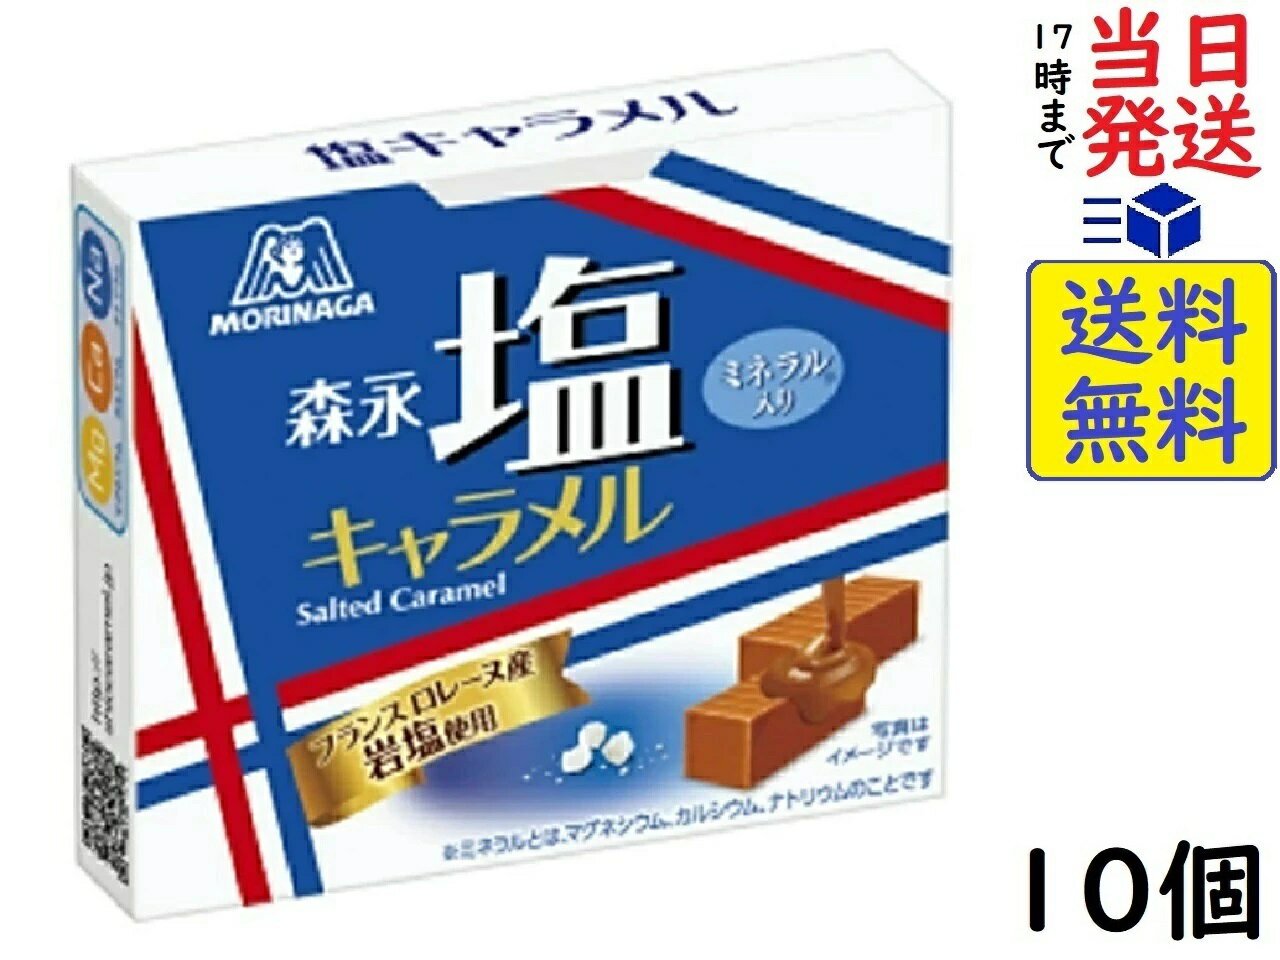 【心ばかりですが…クーポンつきます☆】日邦製菓 塩キャラメル 230g×12袋入 お菓子 箱買い